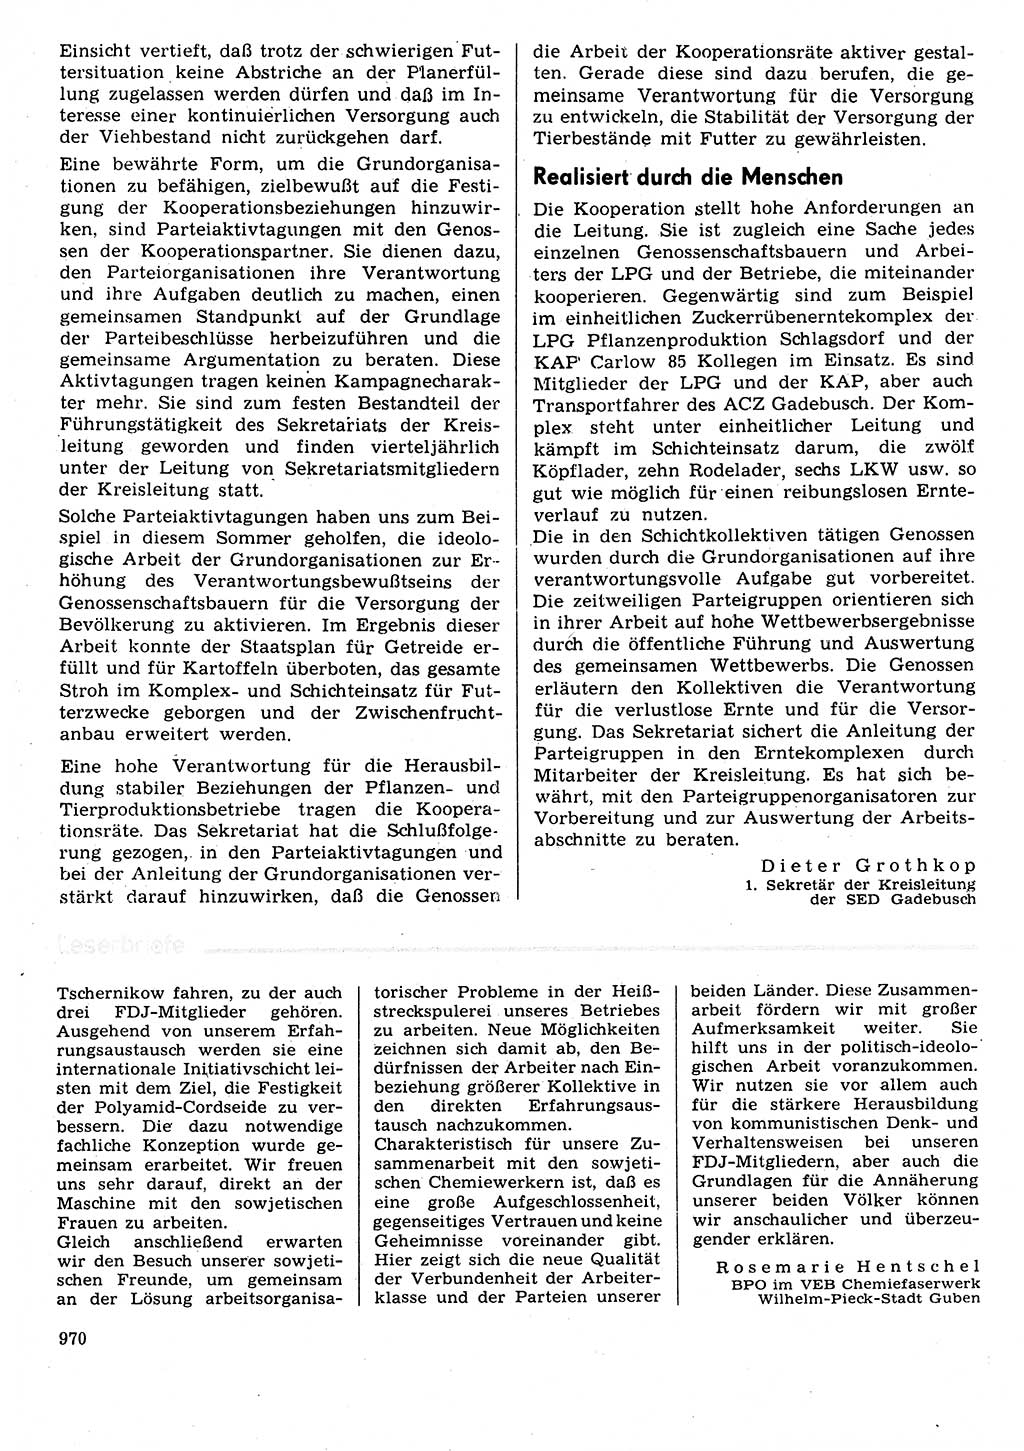 Neuer Weg (NW), Organ des Zentralkomitees (ZK) der SED (Sozialistische Einheitspartei Deutschlands) für Fragen des Parteilebens, 31. Jahrgang [Deutsche Demokratische Republik (DDR)] 1976, Seite 970 (NW ZK SED DDR 1976, S. 970)